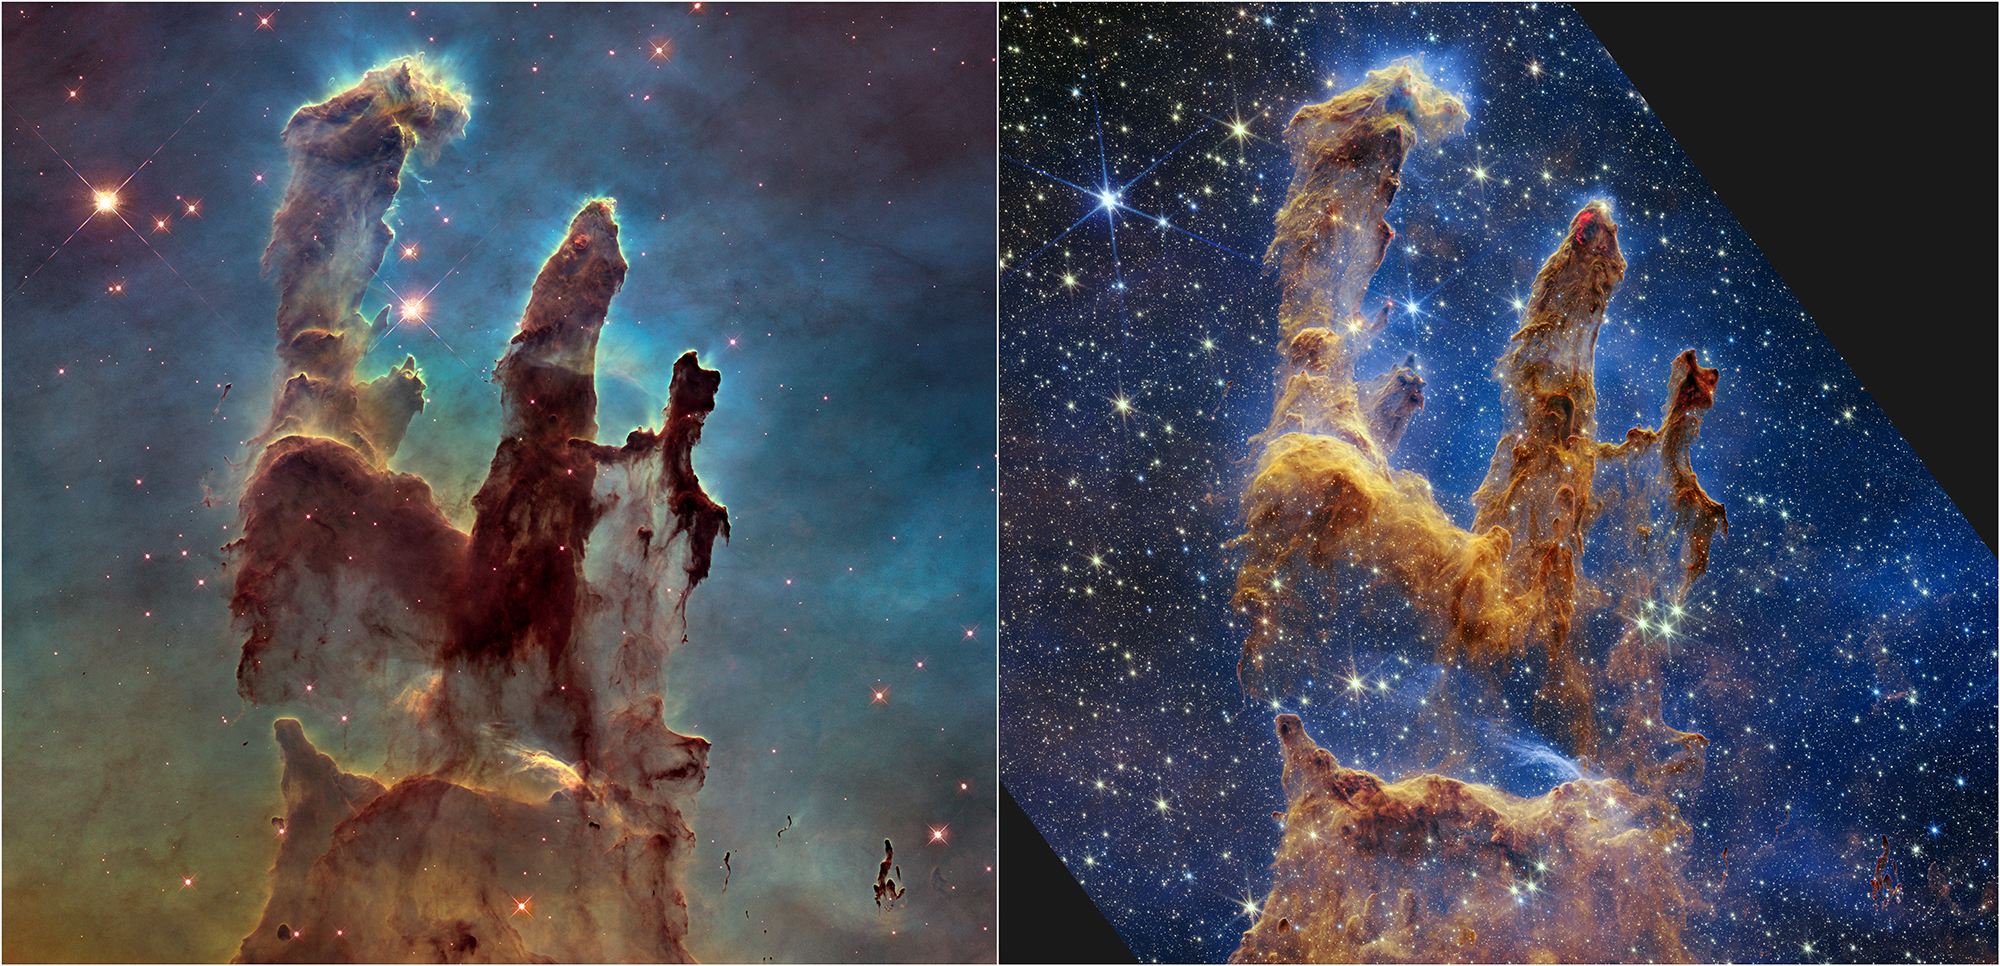 Imágenes del lugar donde nacen estrellas, conocido como Pilares de la Creación, tomadas por el Hubble (izq) y el Webb (der)